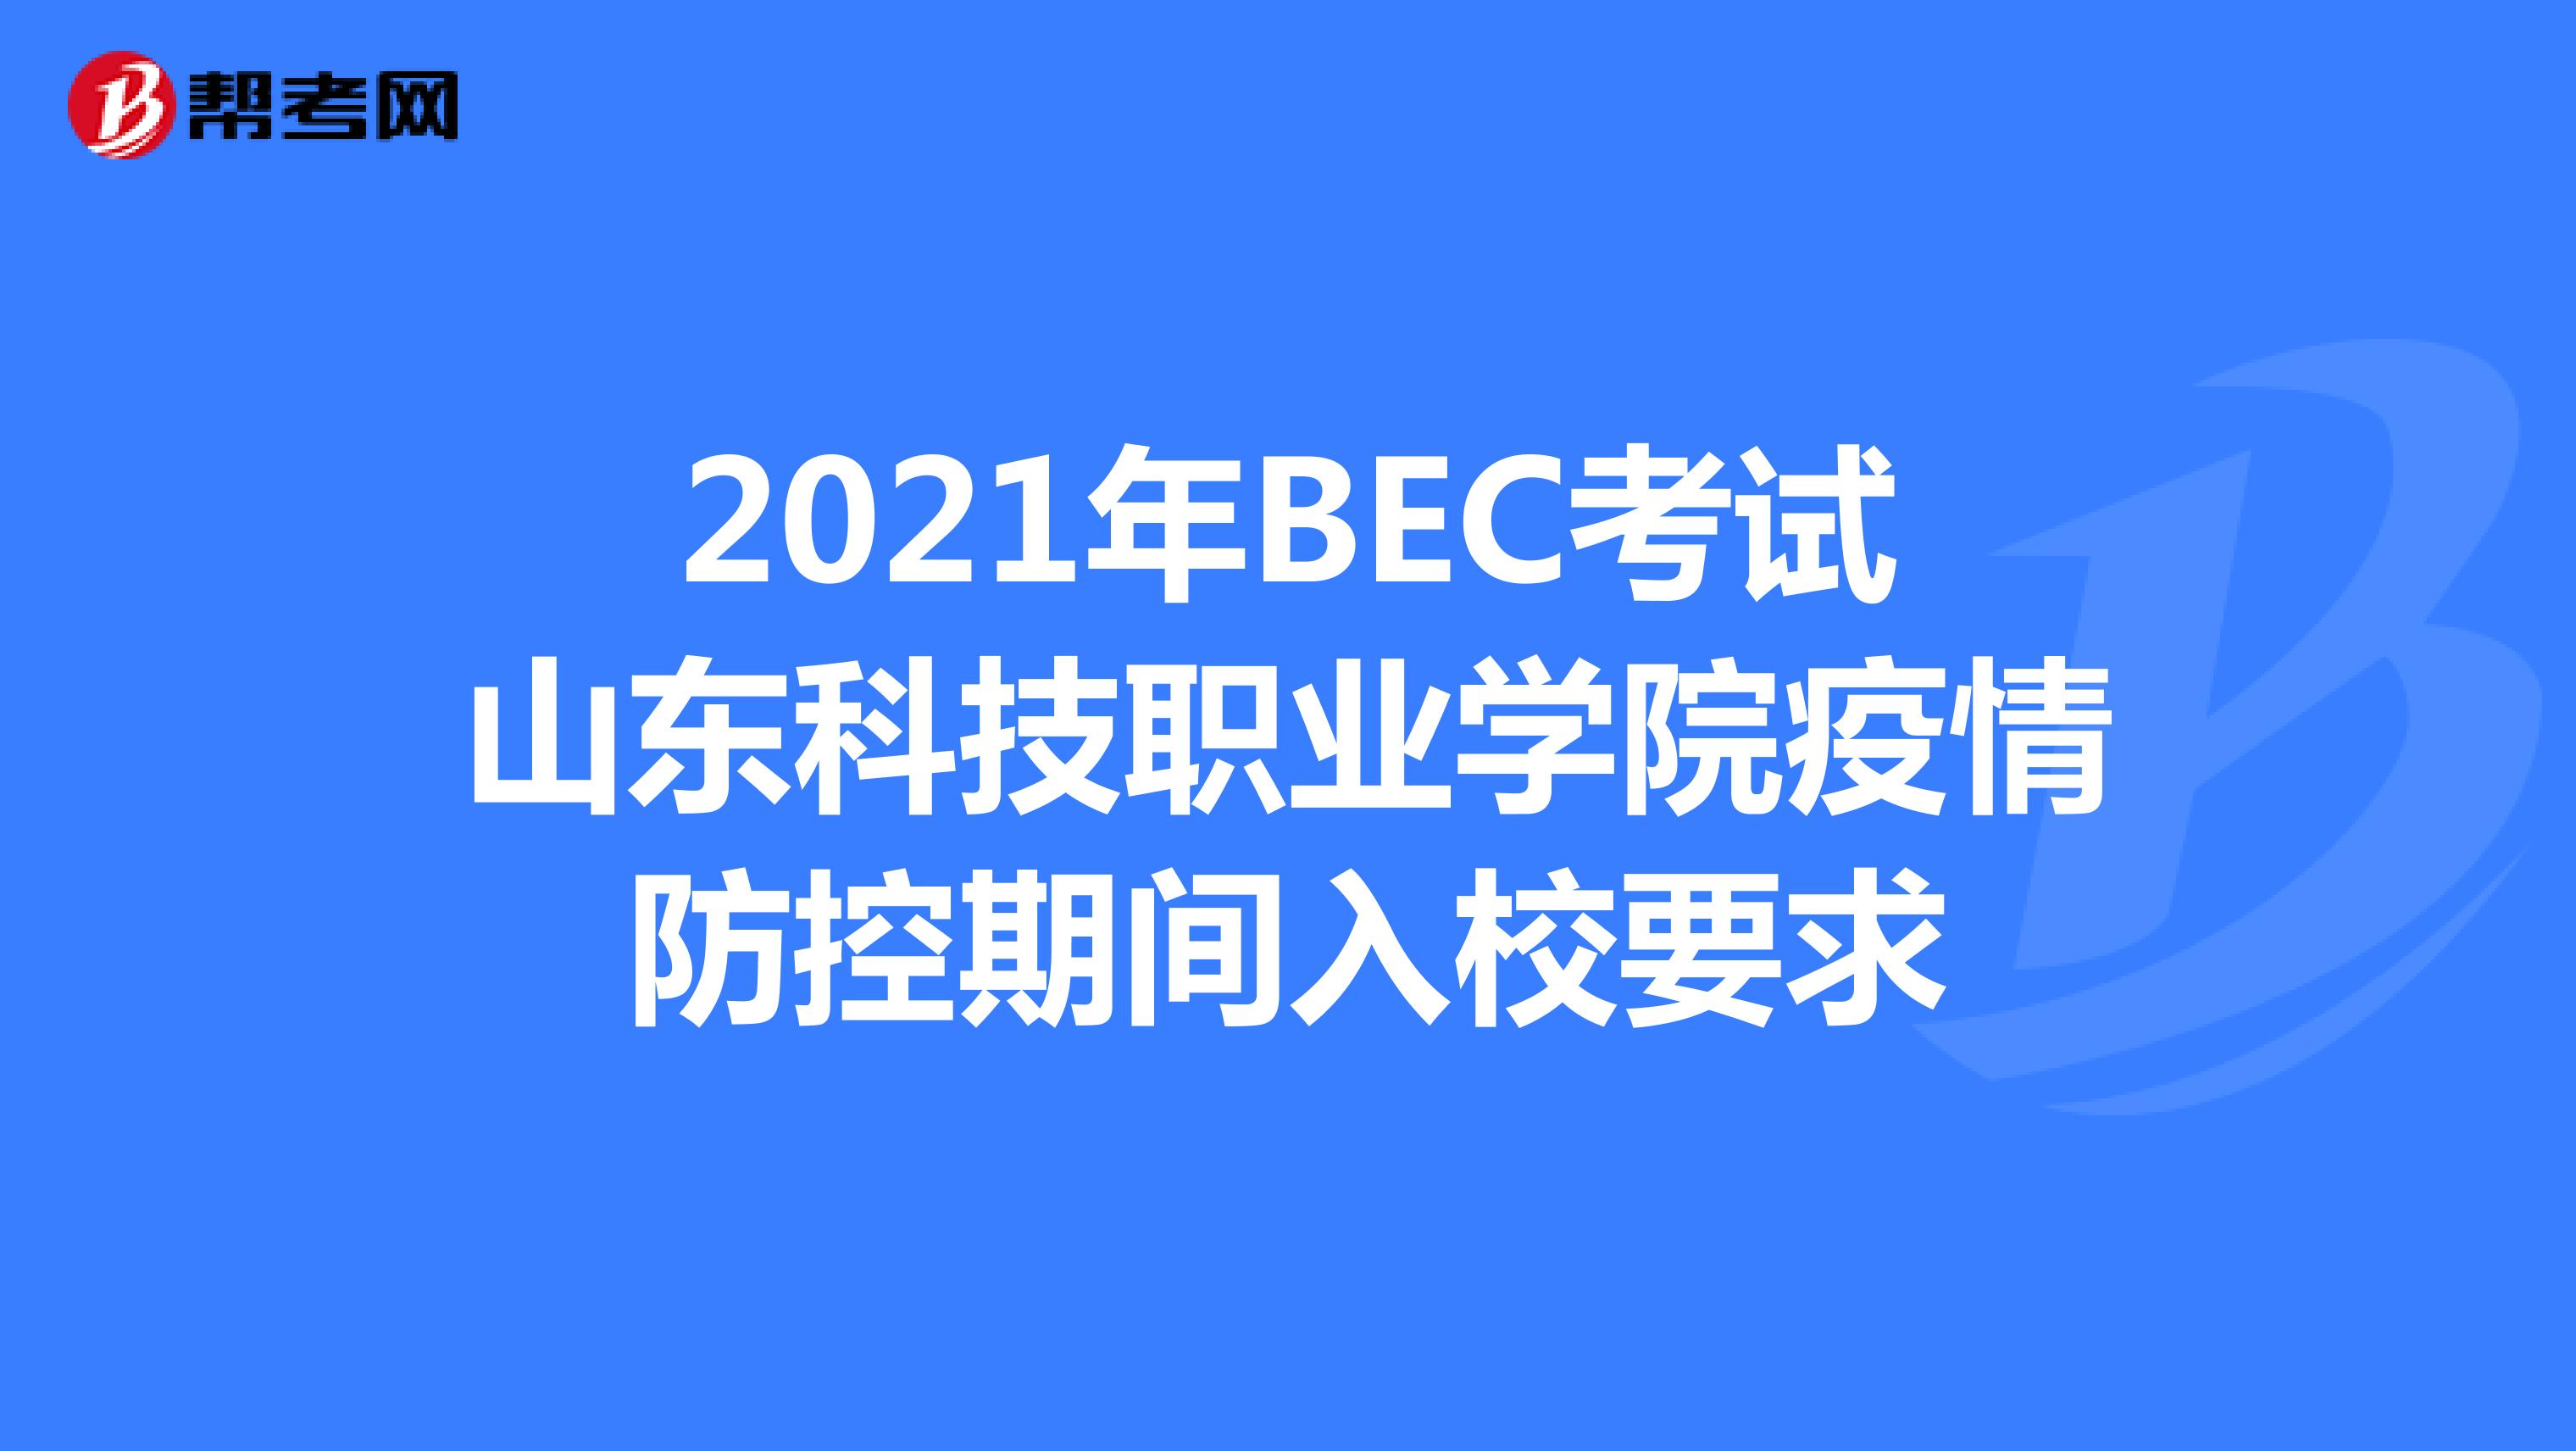 2021年BEC考试山东科技职业学院疫情防控期间入校要求